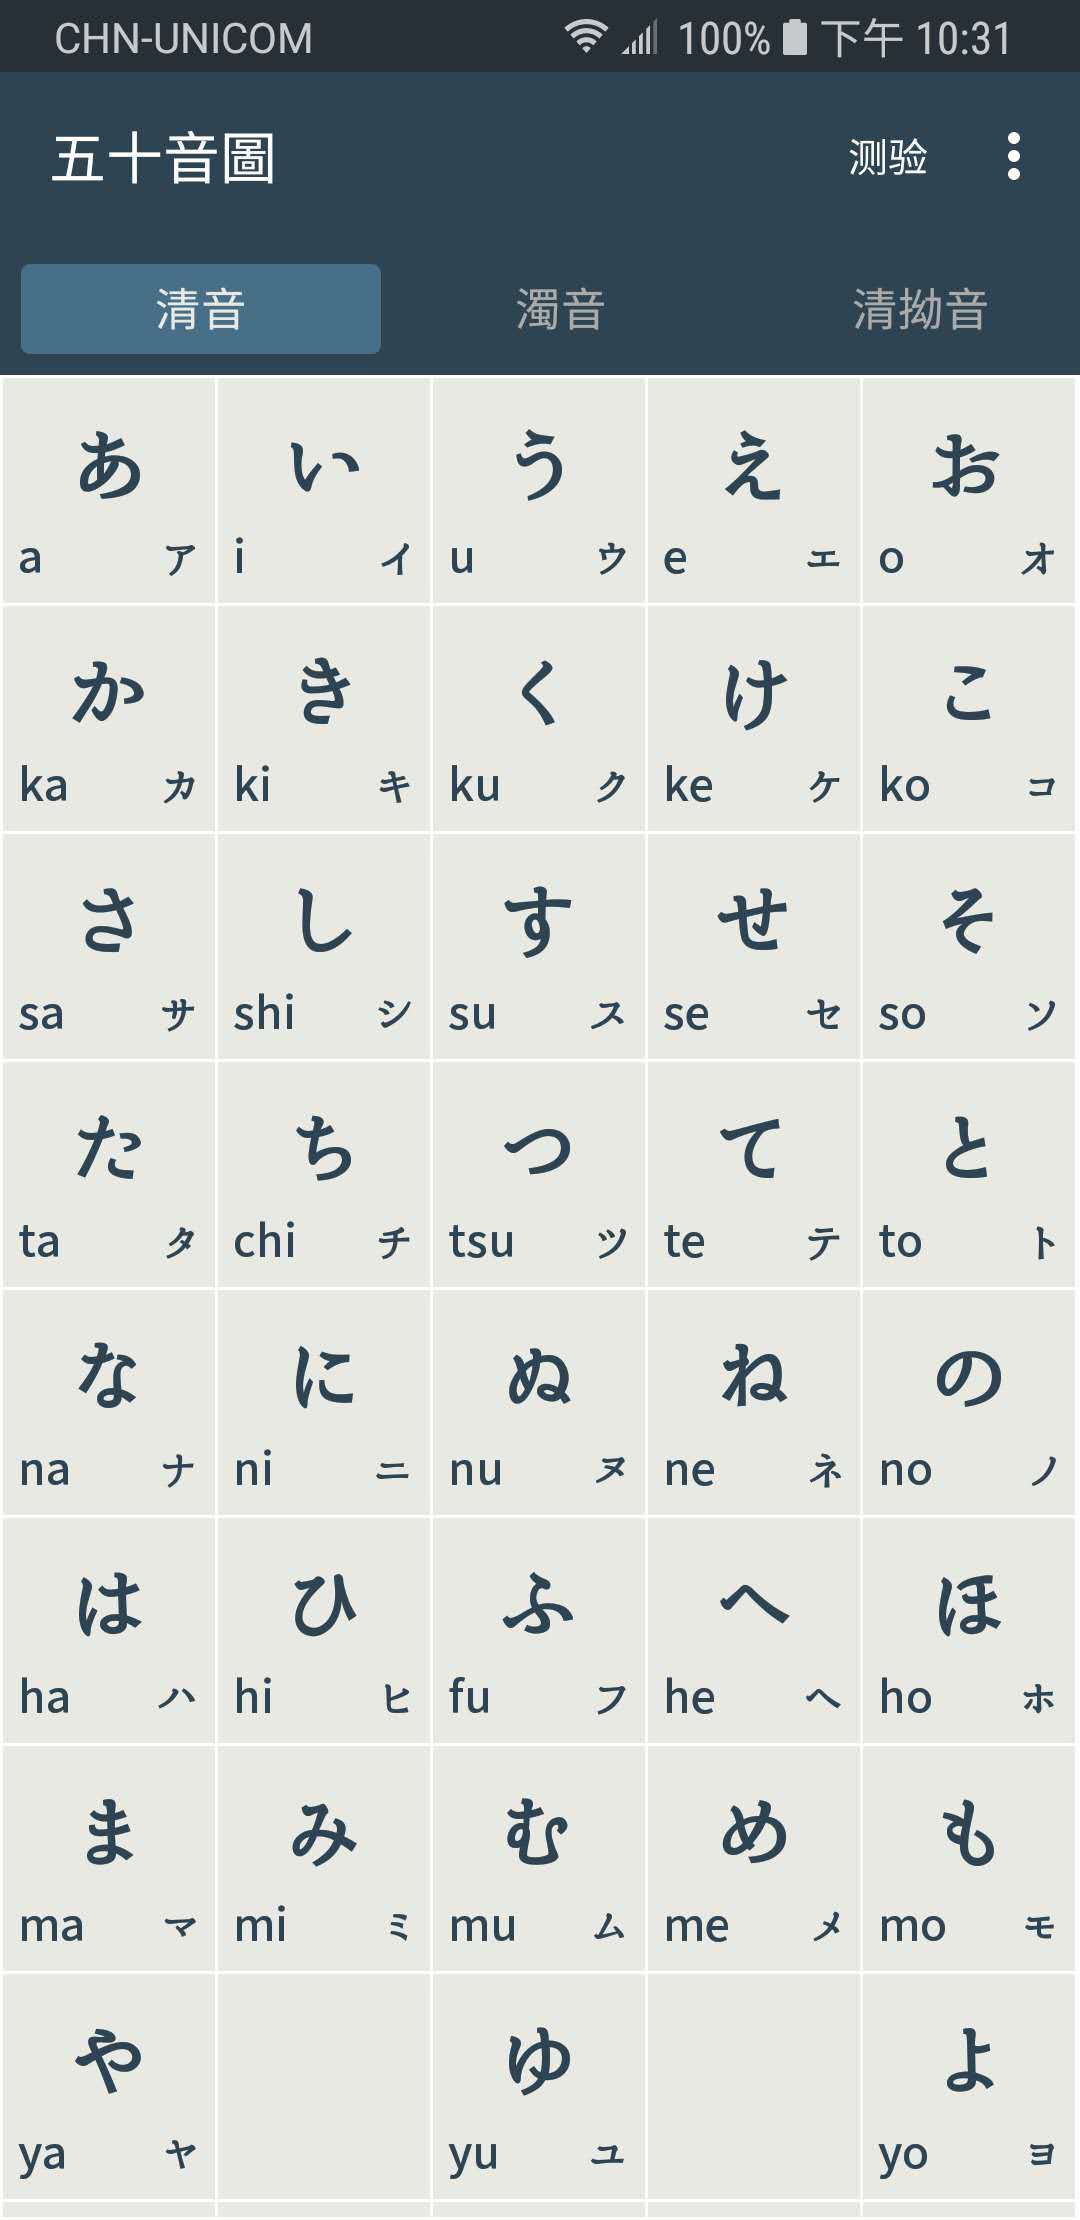 「最美应用」五十音圖：清爽直接的日语学习 App ，轻松拿下五十音